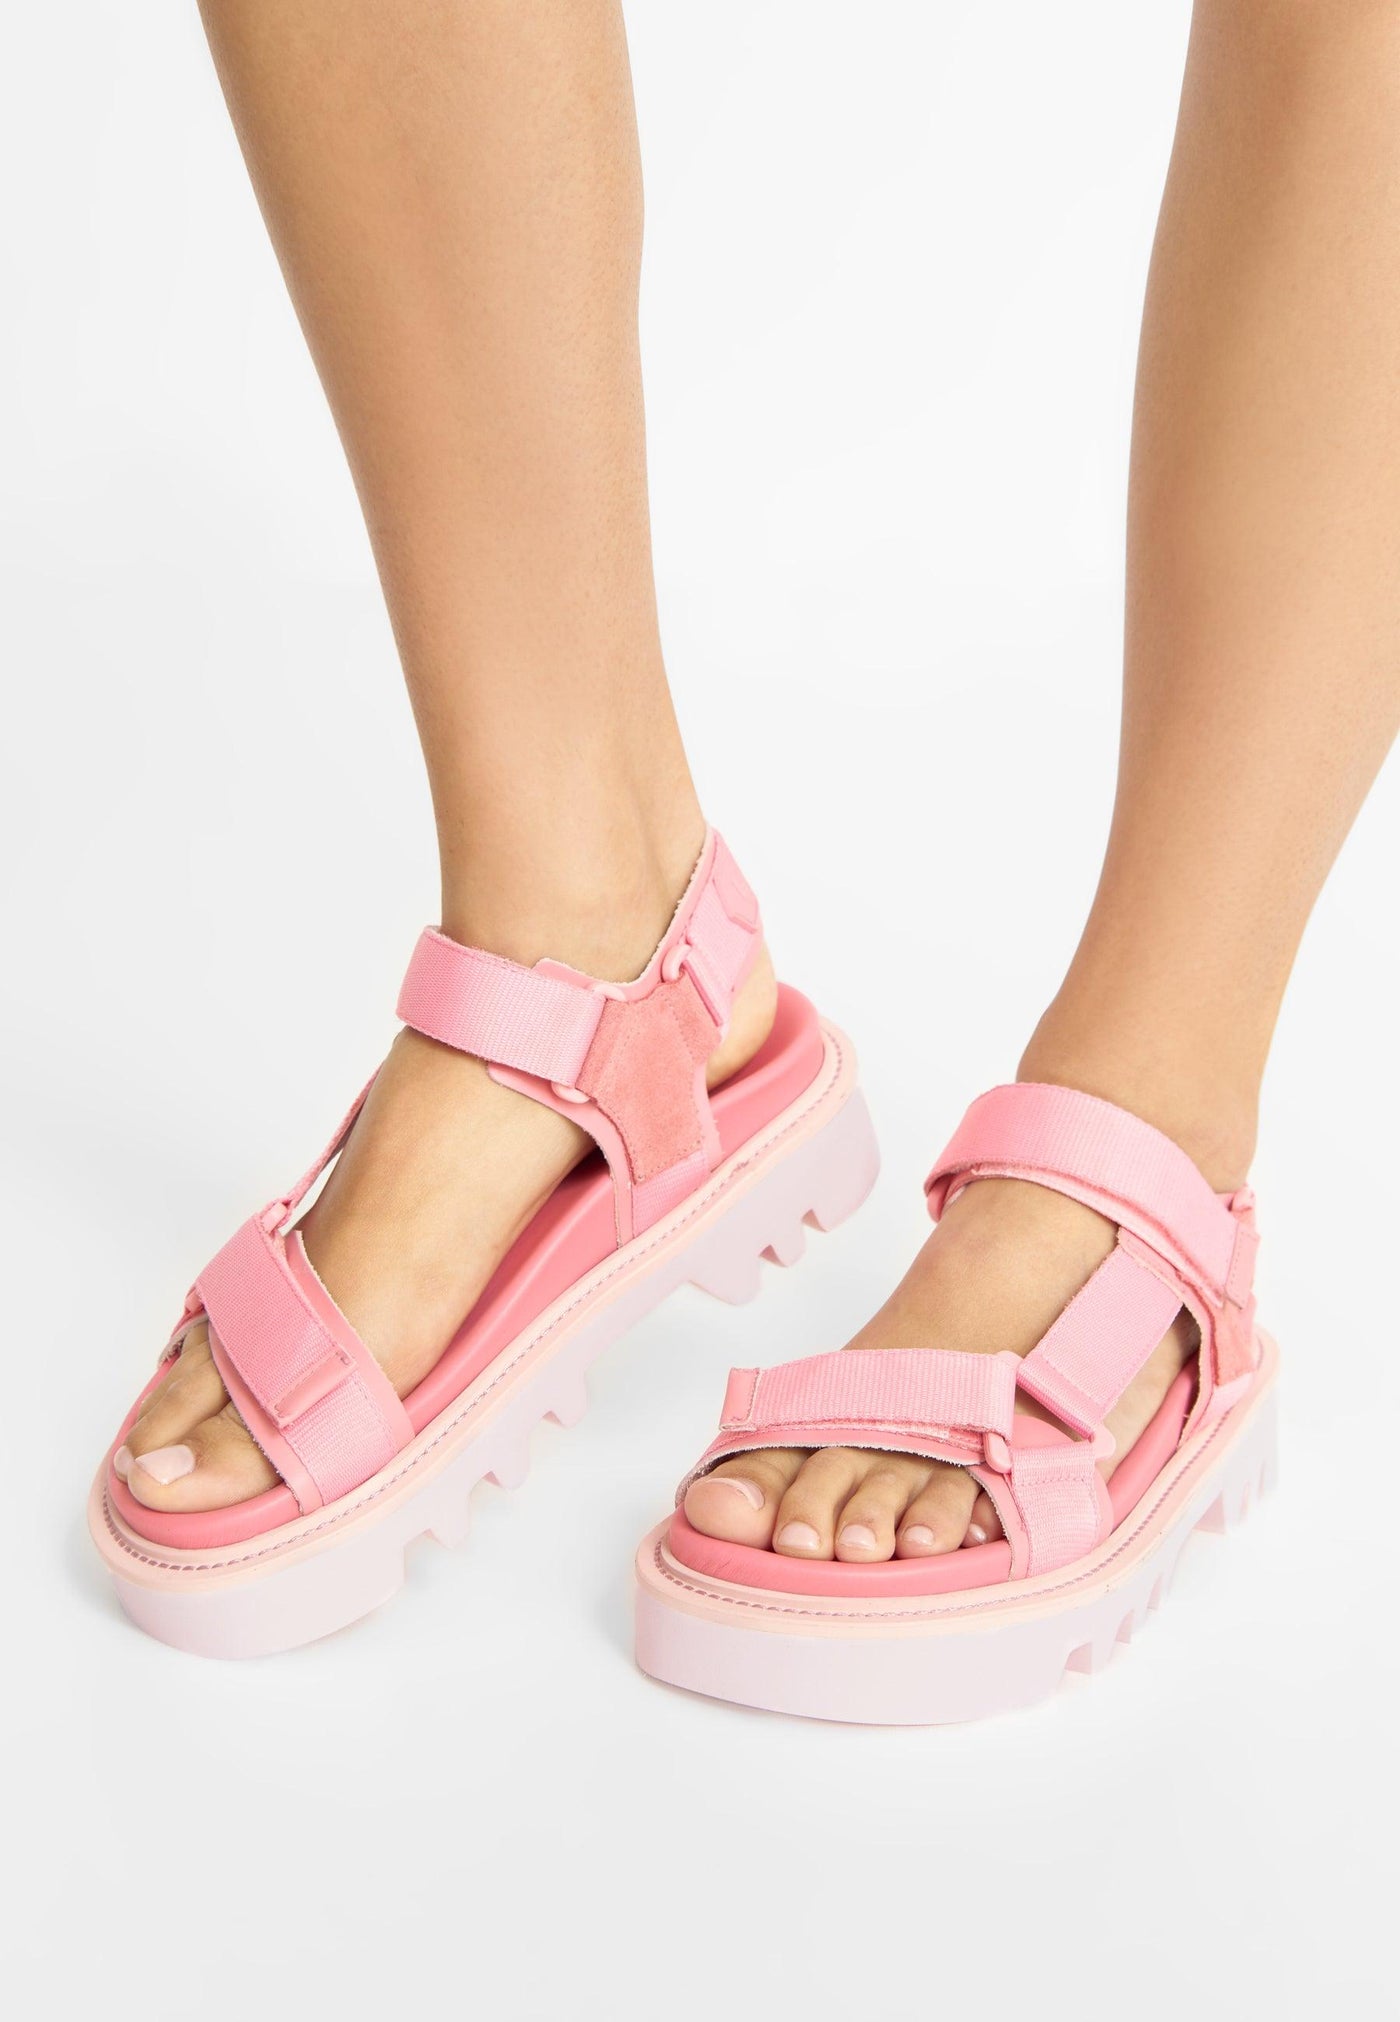 LÄST Candy Pink Sandals Pink